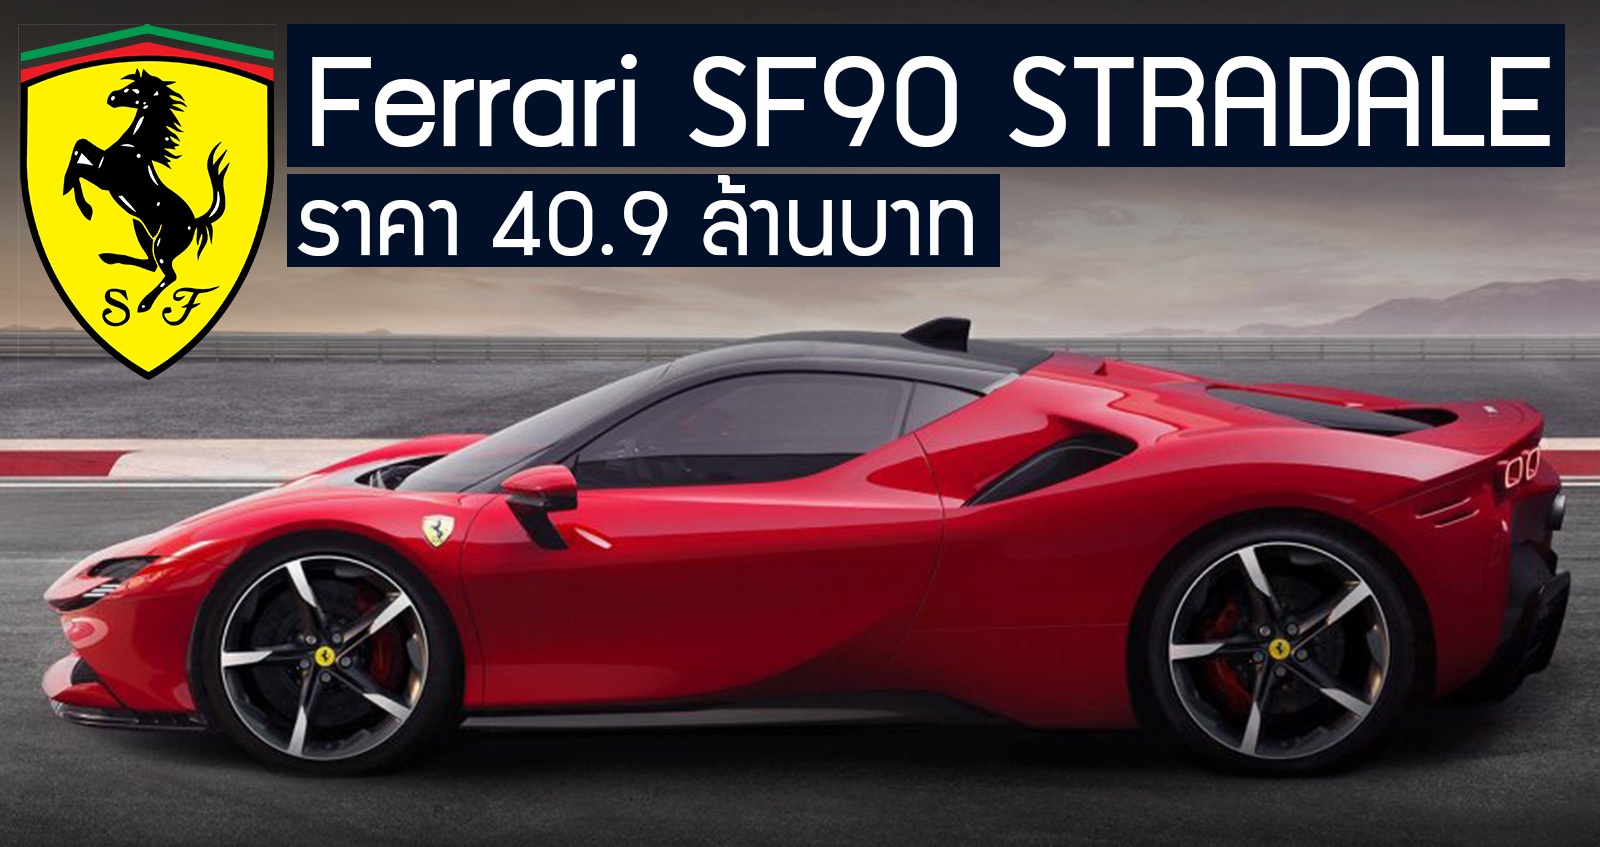 ขายไทย Ferrari SF90 STRADALE ราคา 40.9 ล้านบาท +มอเตอร์ไฟฟ้า 1,000 แรงม้า เร็วสูงสุด 340 กม./ชม.